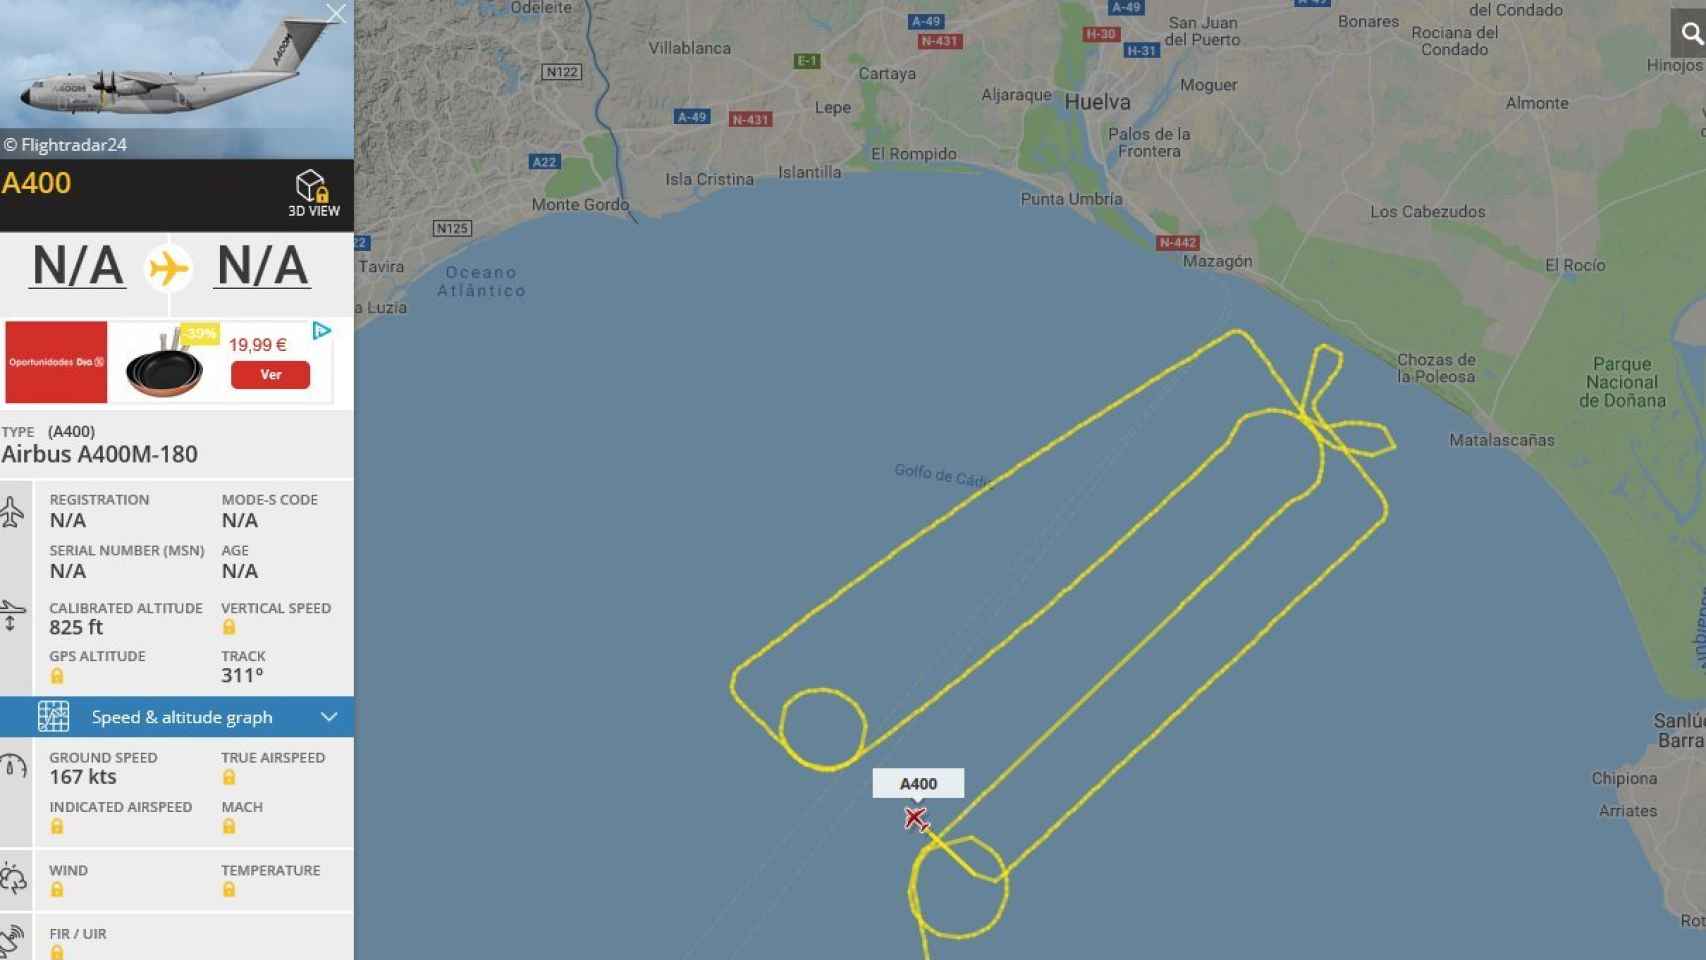 Recorrido efectuado por el avión A400M en el Golfo de Cádiz.